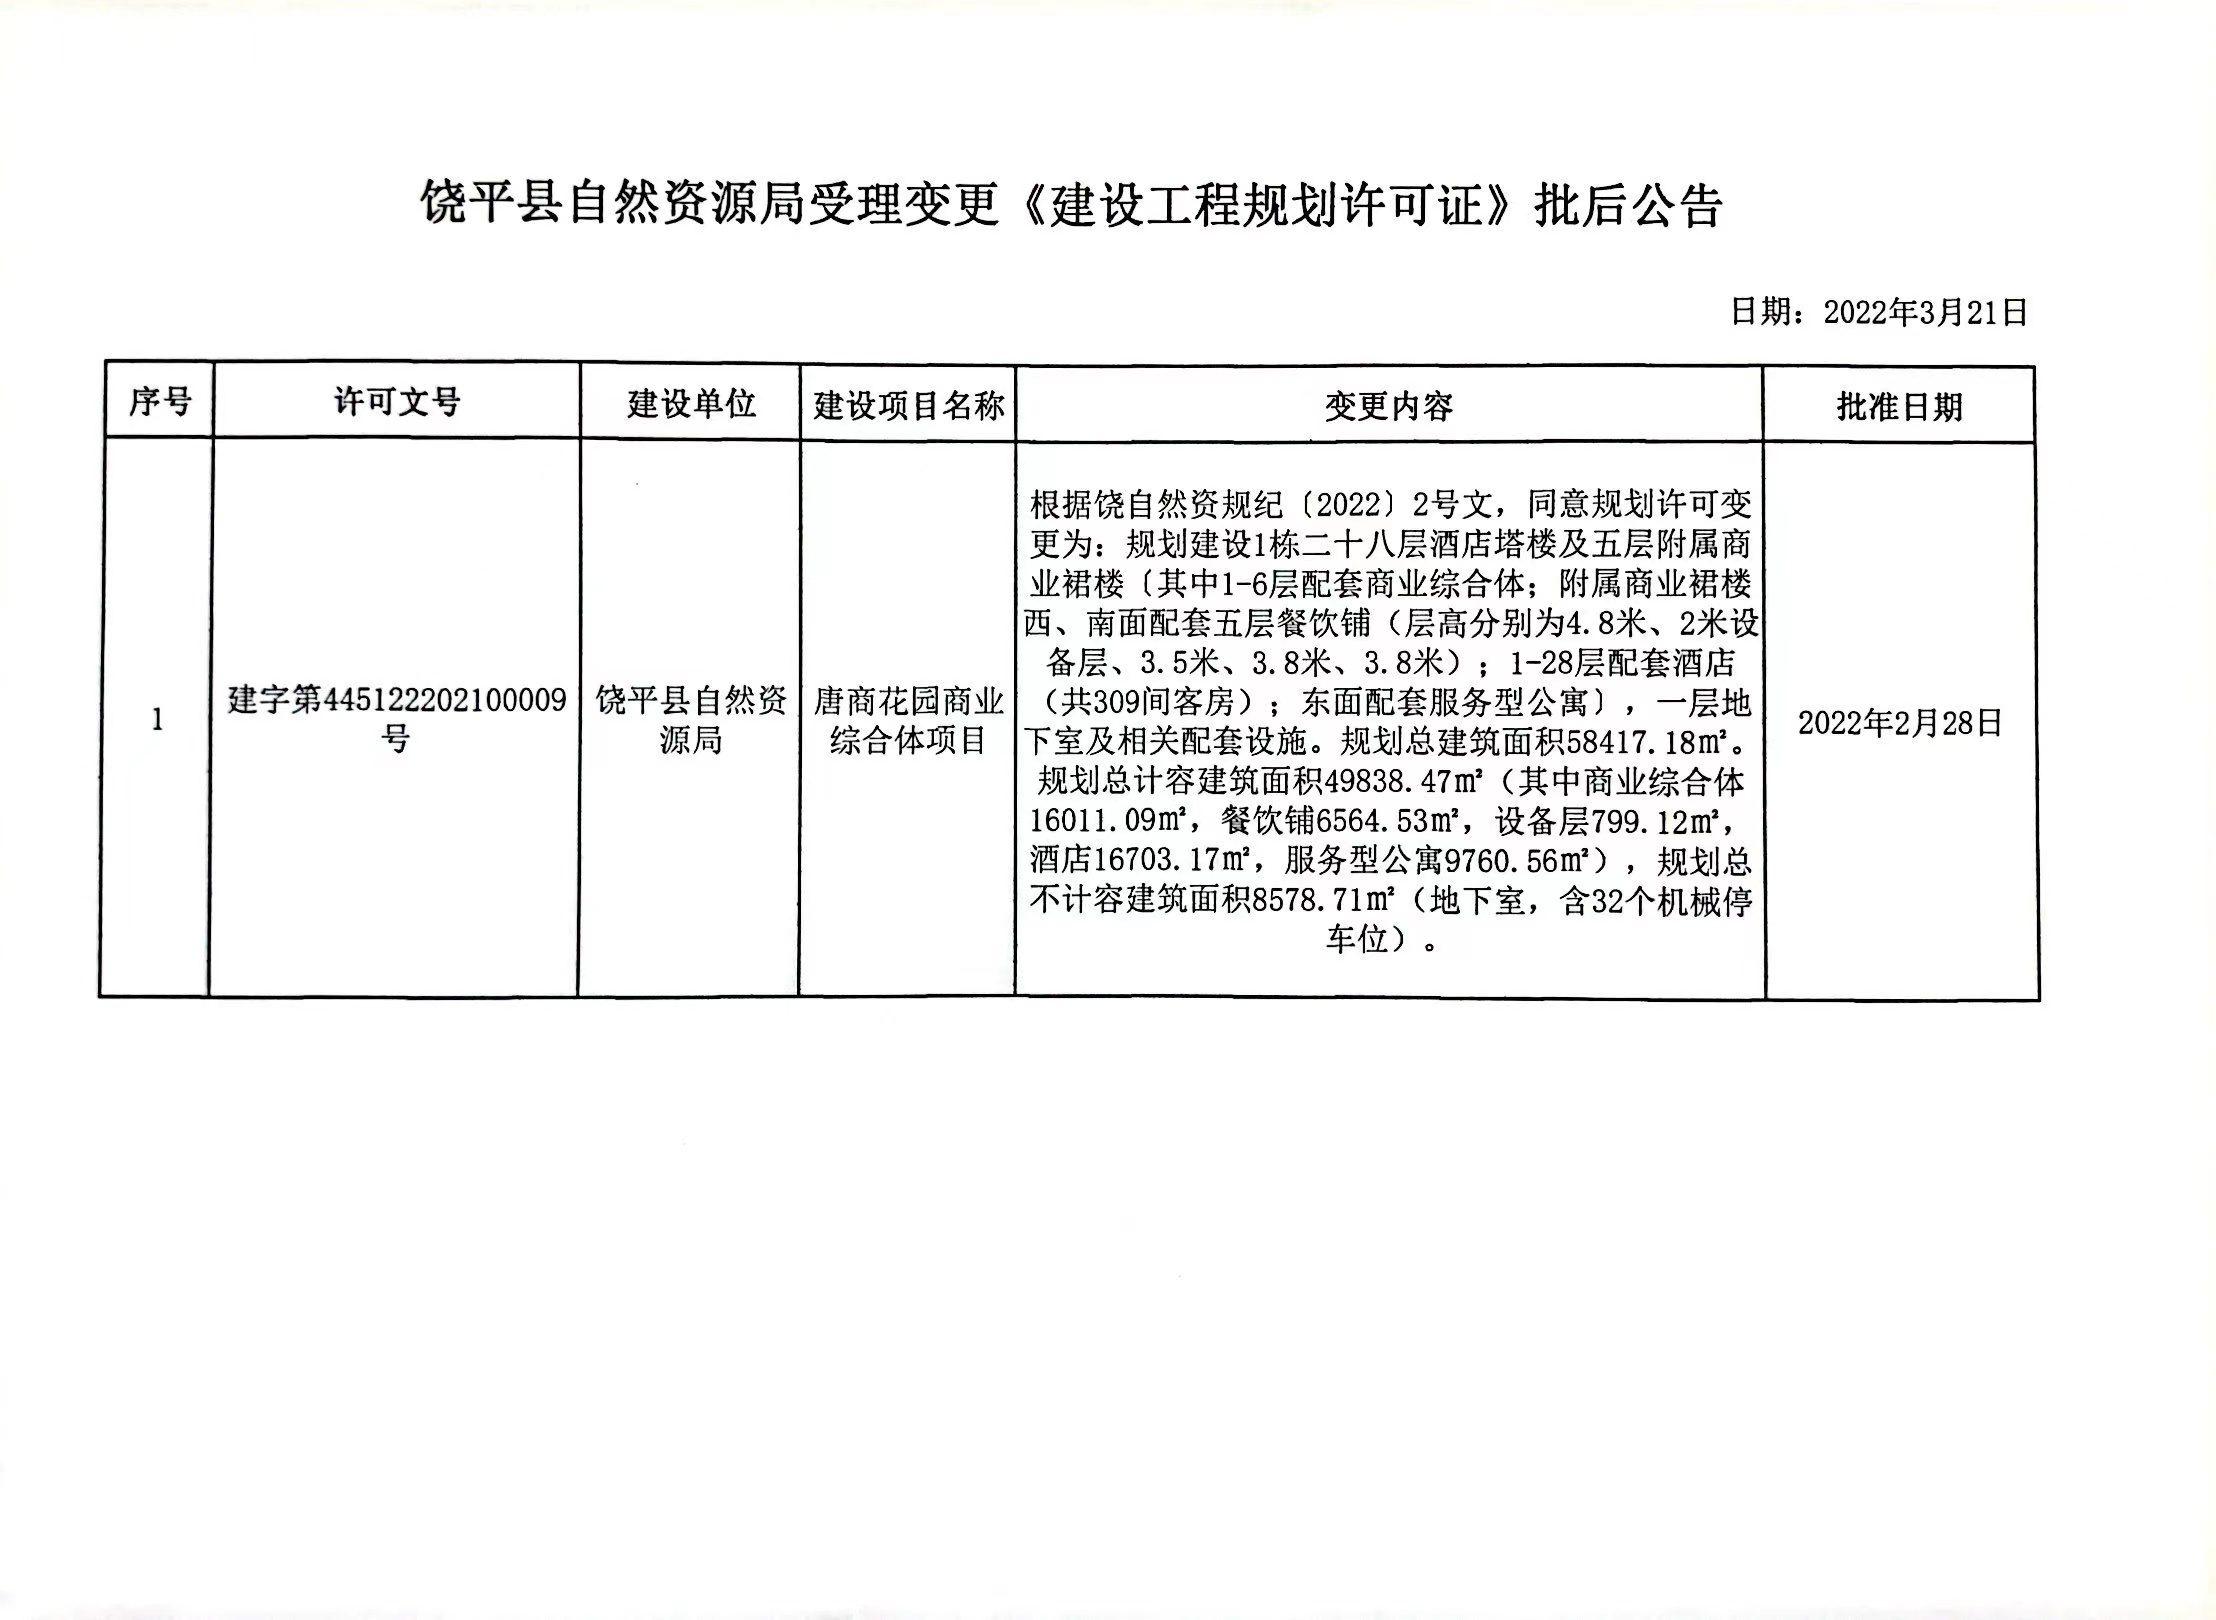 饶平县自然资源局受理变更《建设工程规划许可证》批后公告3.21.jpg